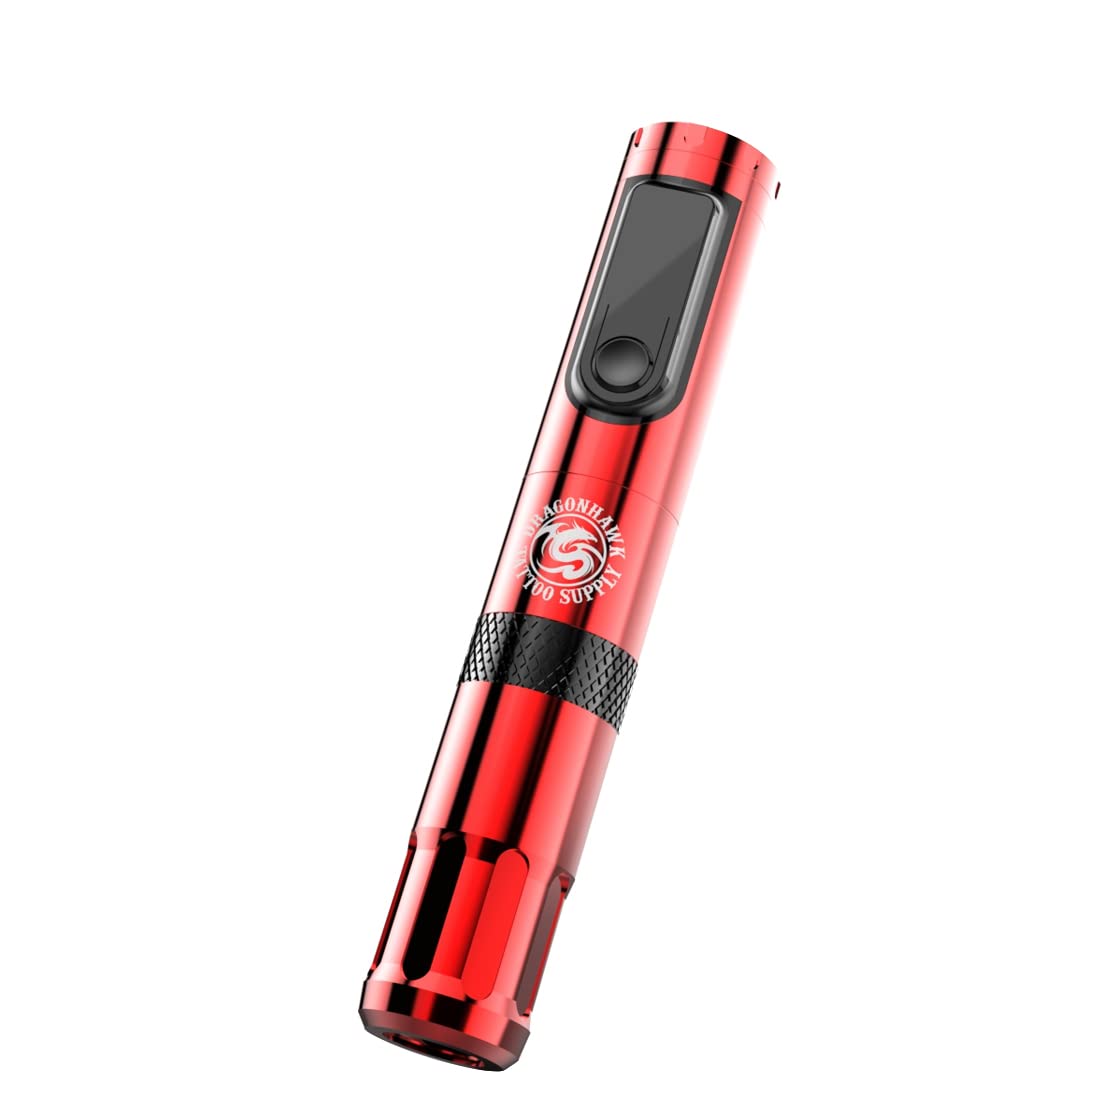 Dragonhawk X4 Red Wireless Tattoo Pen Machine